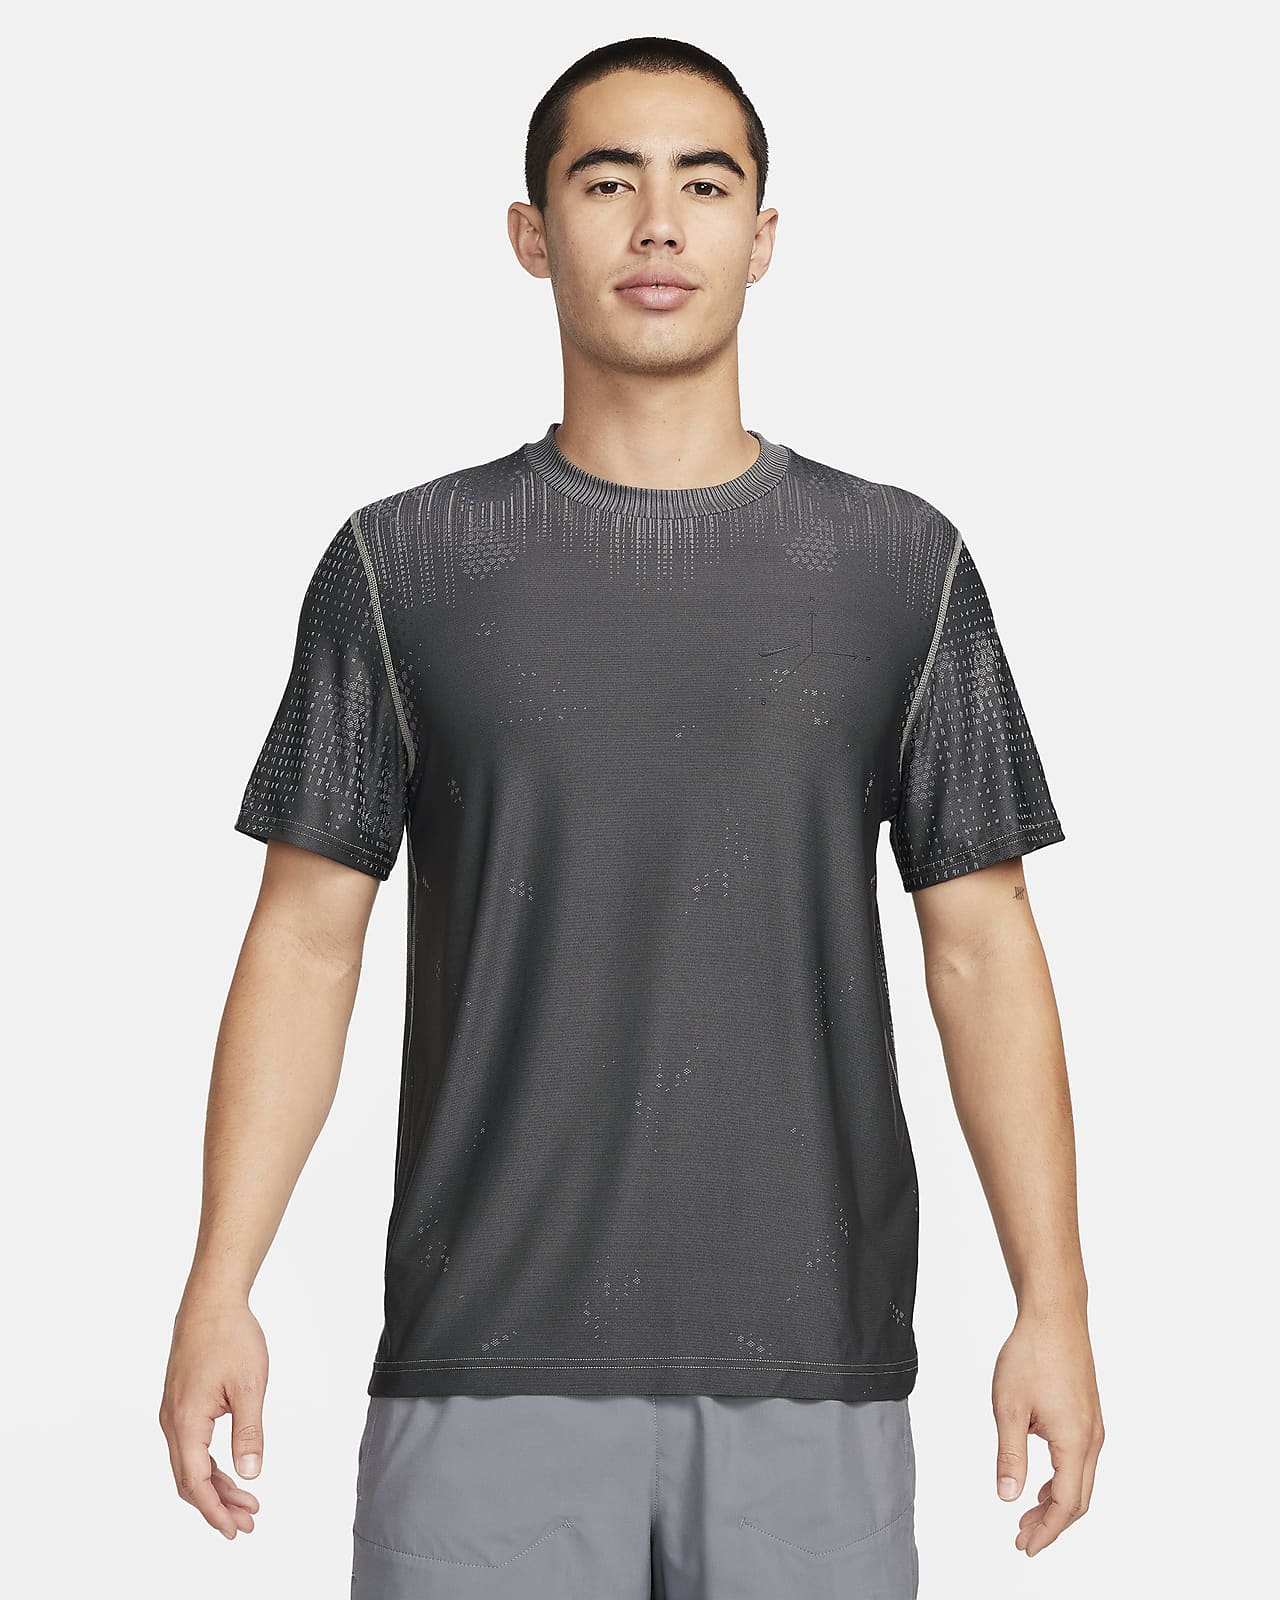 Nike A.P.S. Pánské všestranné tričko Dri-FIT ADV s krátkým rukávem